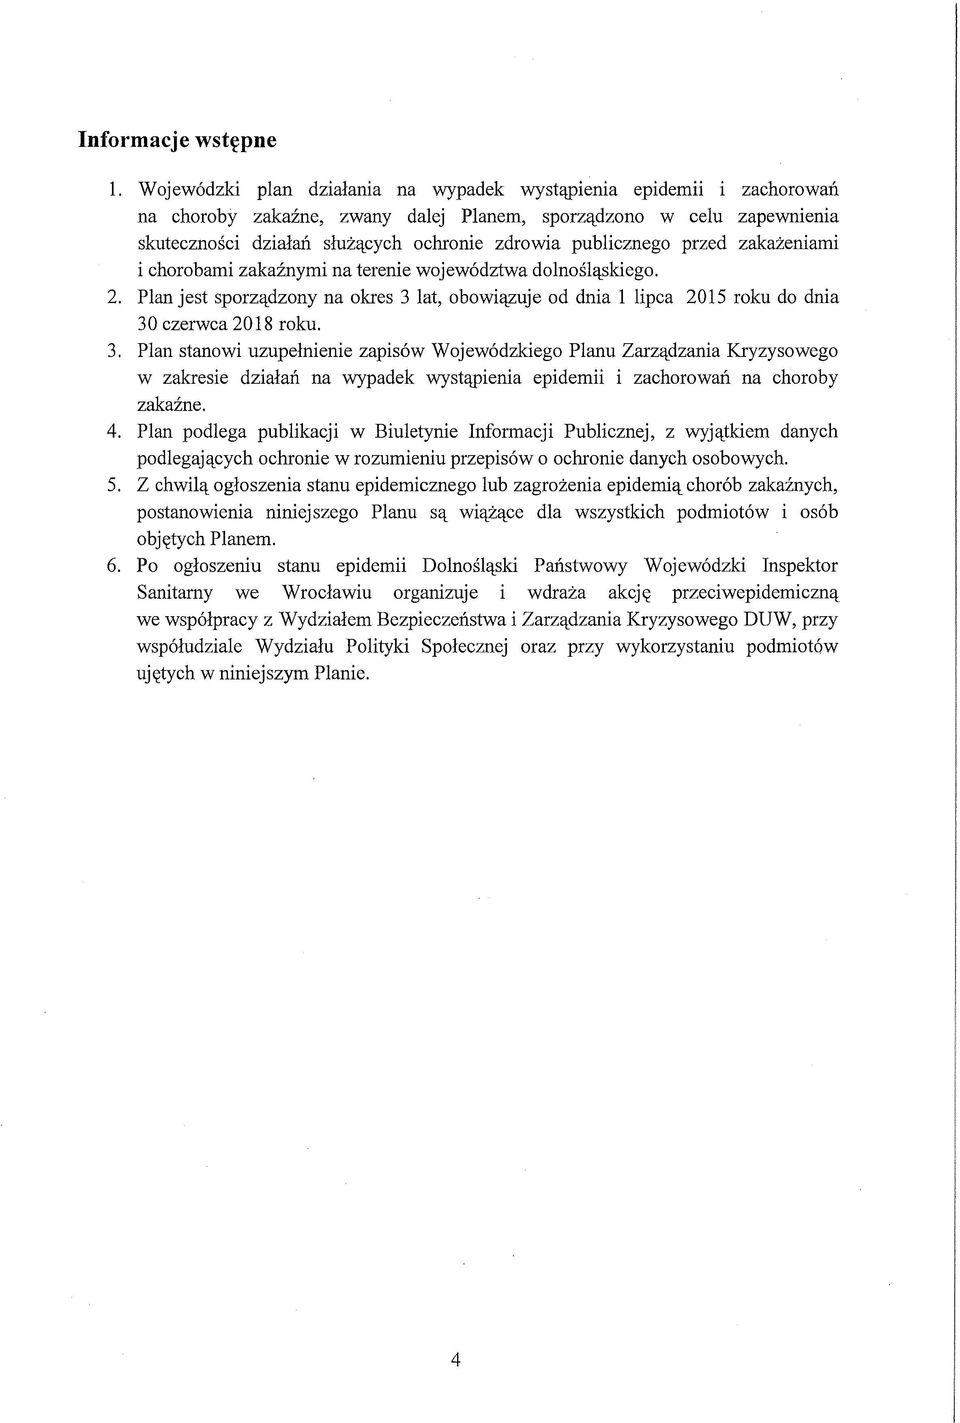 publicznego przed zakażeniami i chorobami zakaźnymi na terenie województwa dolnośląskiego. 2. Plan jest sporządzony na okres 3 lat, obowiązuje od dnia 1 lipca 2015 roku do dnia 30 czerwca 2018 roku.